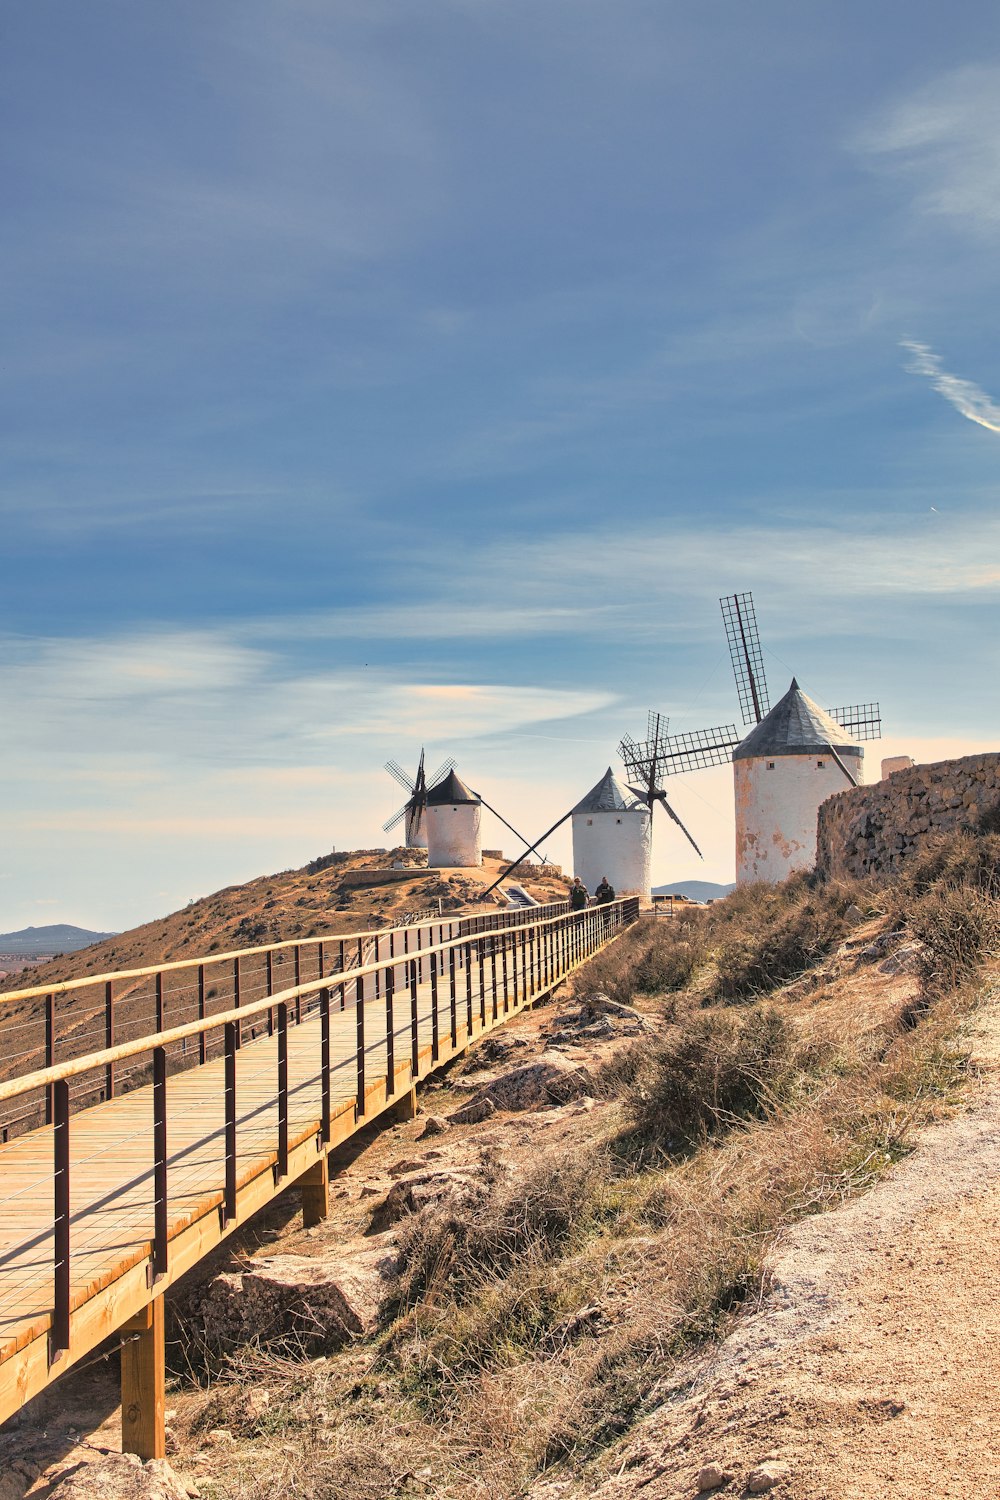 three windmills on a hill near a wooden bridge